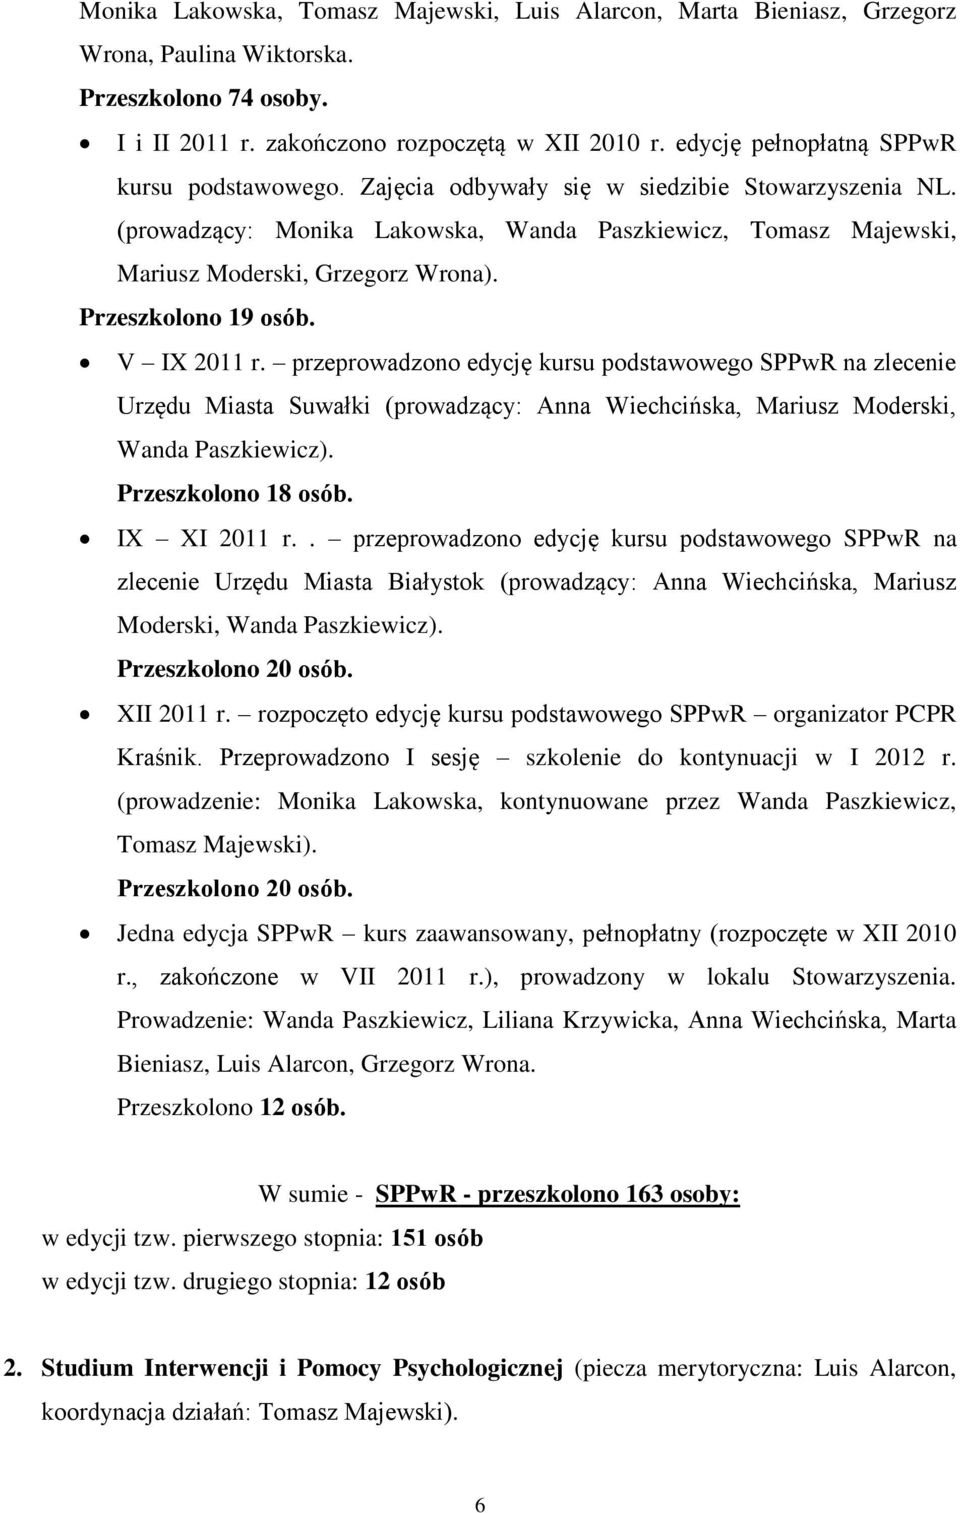 Przeszkolono 19 osób. V IX 2011 r. przeprowadzono edycję kursu podstawowego SPPwR na zlecenie Urzędu Miasta Suwałki (prowadzący: Anna Wiechcińska, Mariusz Moderski, Wanda Paszkiewicz).